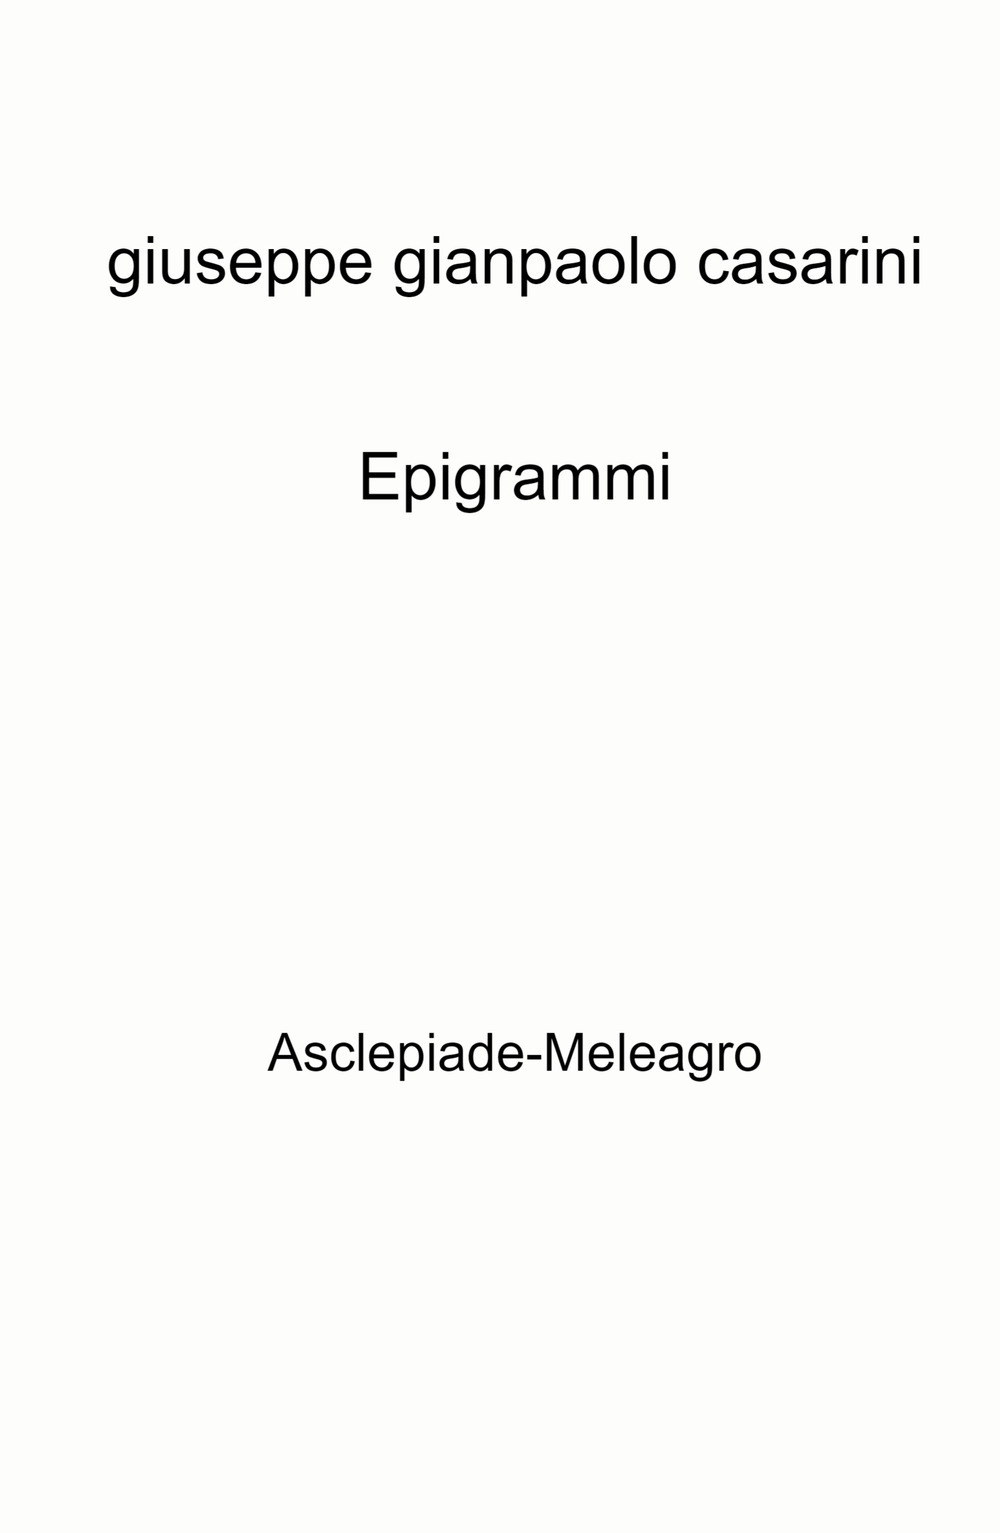 Epigrammi. Asclepiade-Meleagro